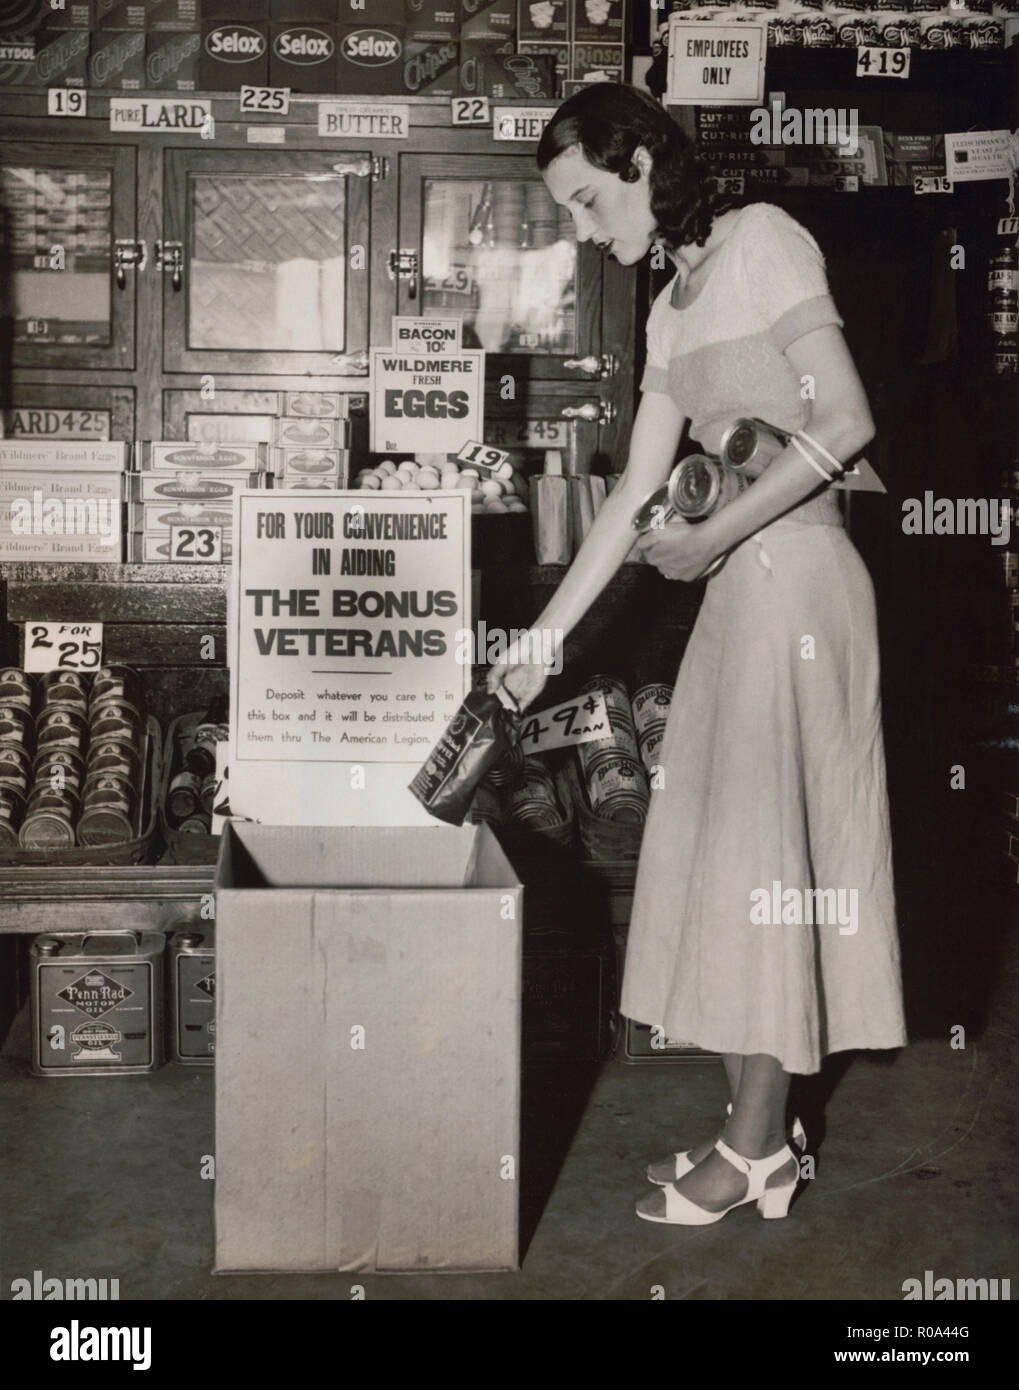 Miss Mary Wick Inverkehrbringen Tüte Kaffee in Food Box platziert in Stores erhalten Beiträge für lagerten sich Bonus Army Veterans, Washington DC, USA, Underwood und Underwood, Juni 1932 Stockfoto